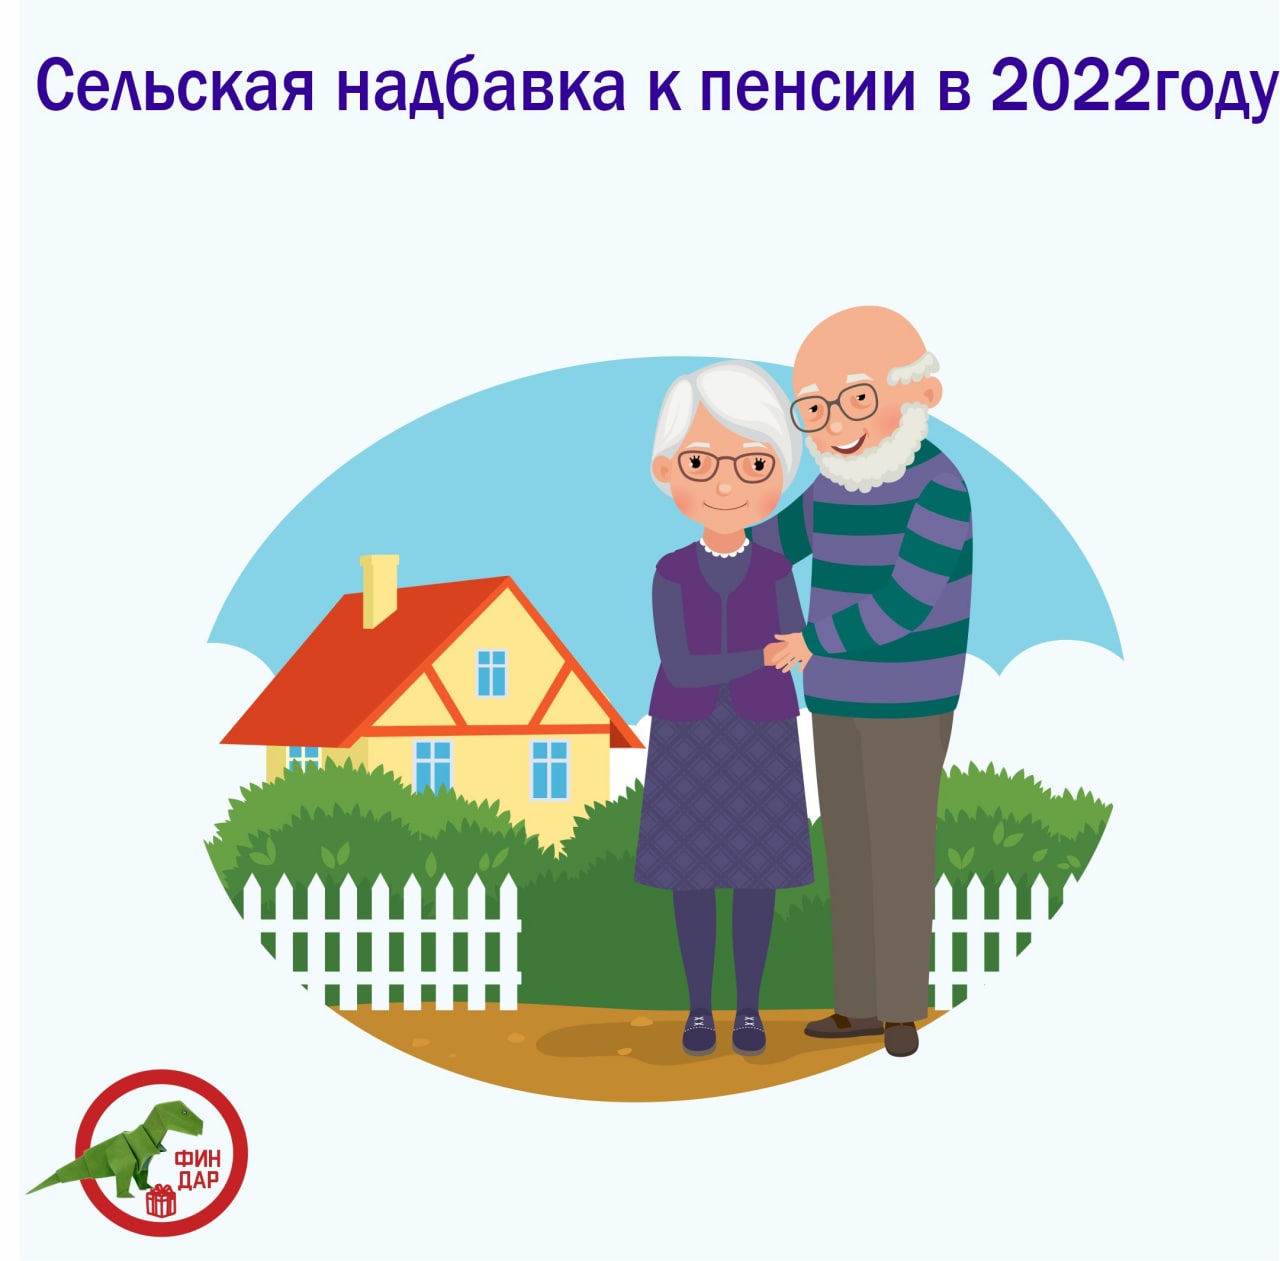 Сельская надбавка к пенсии в 2022 году